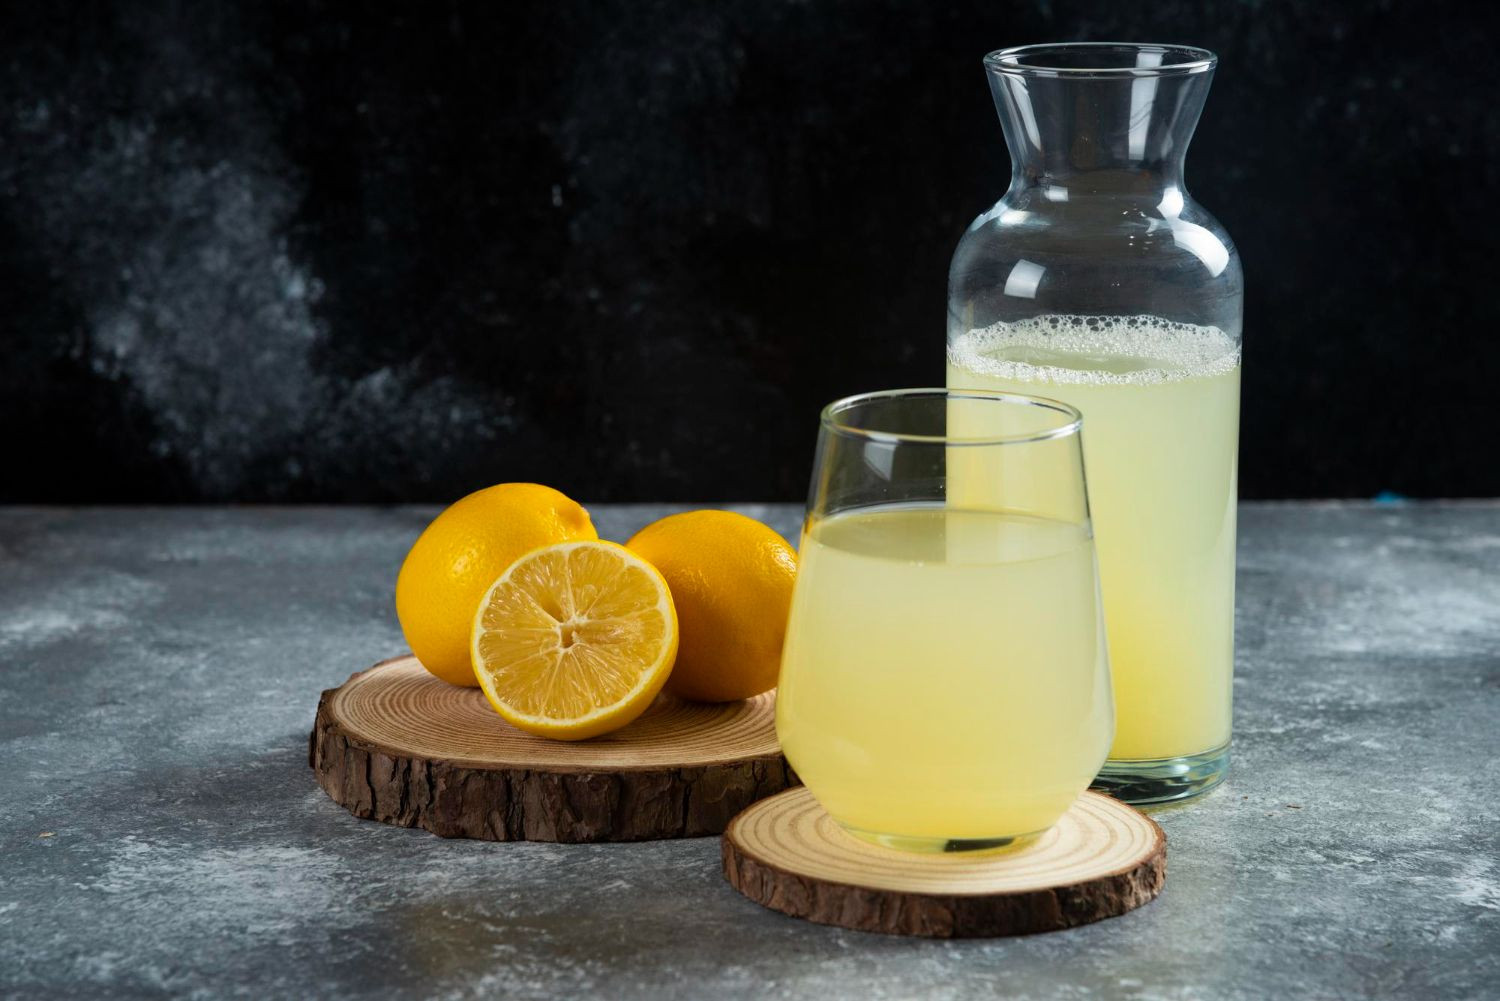 Evde limonu olan mutfağa koşacak: Limonun suyunu içinde o sorundan eser kalmıyor. Limonlu su içmek neye iyi gelir? - Resim: 1